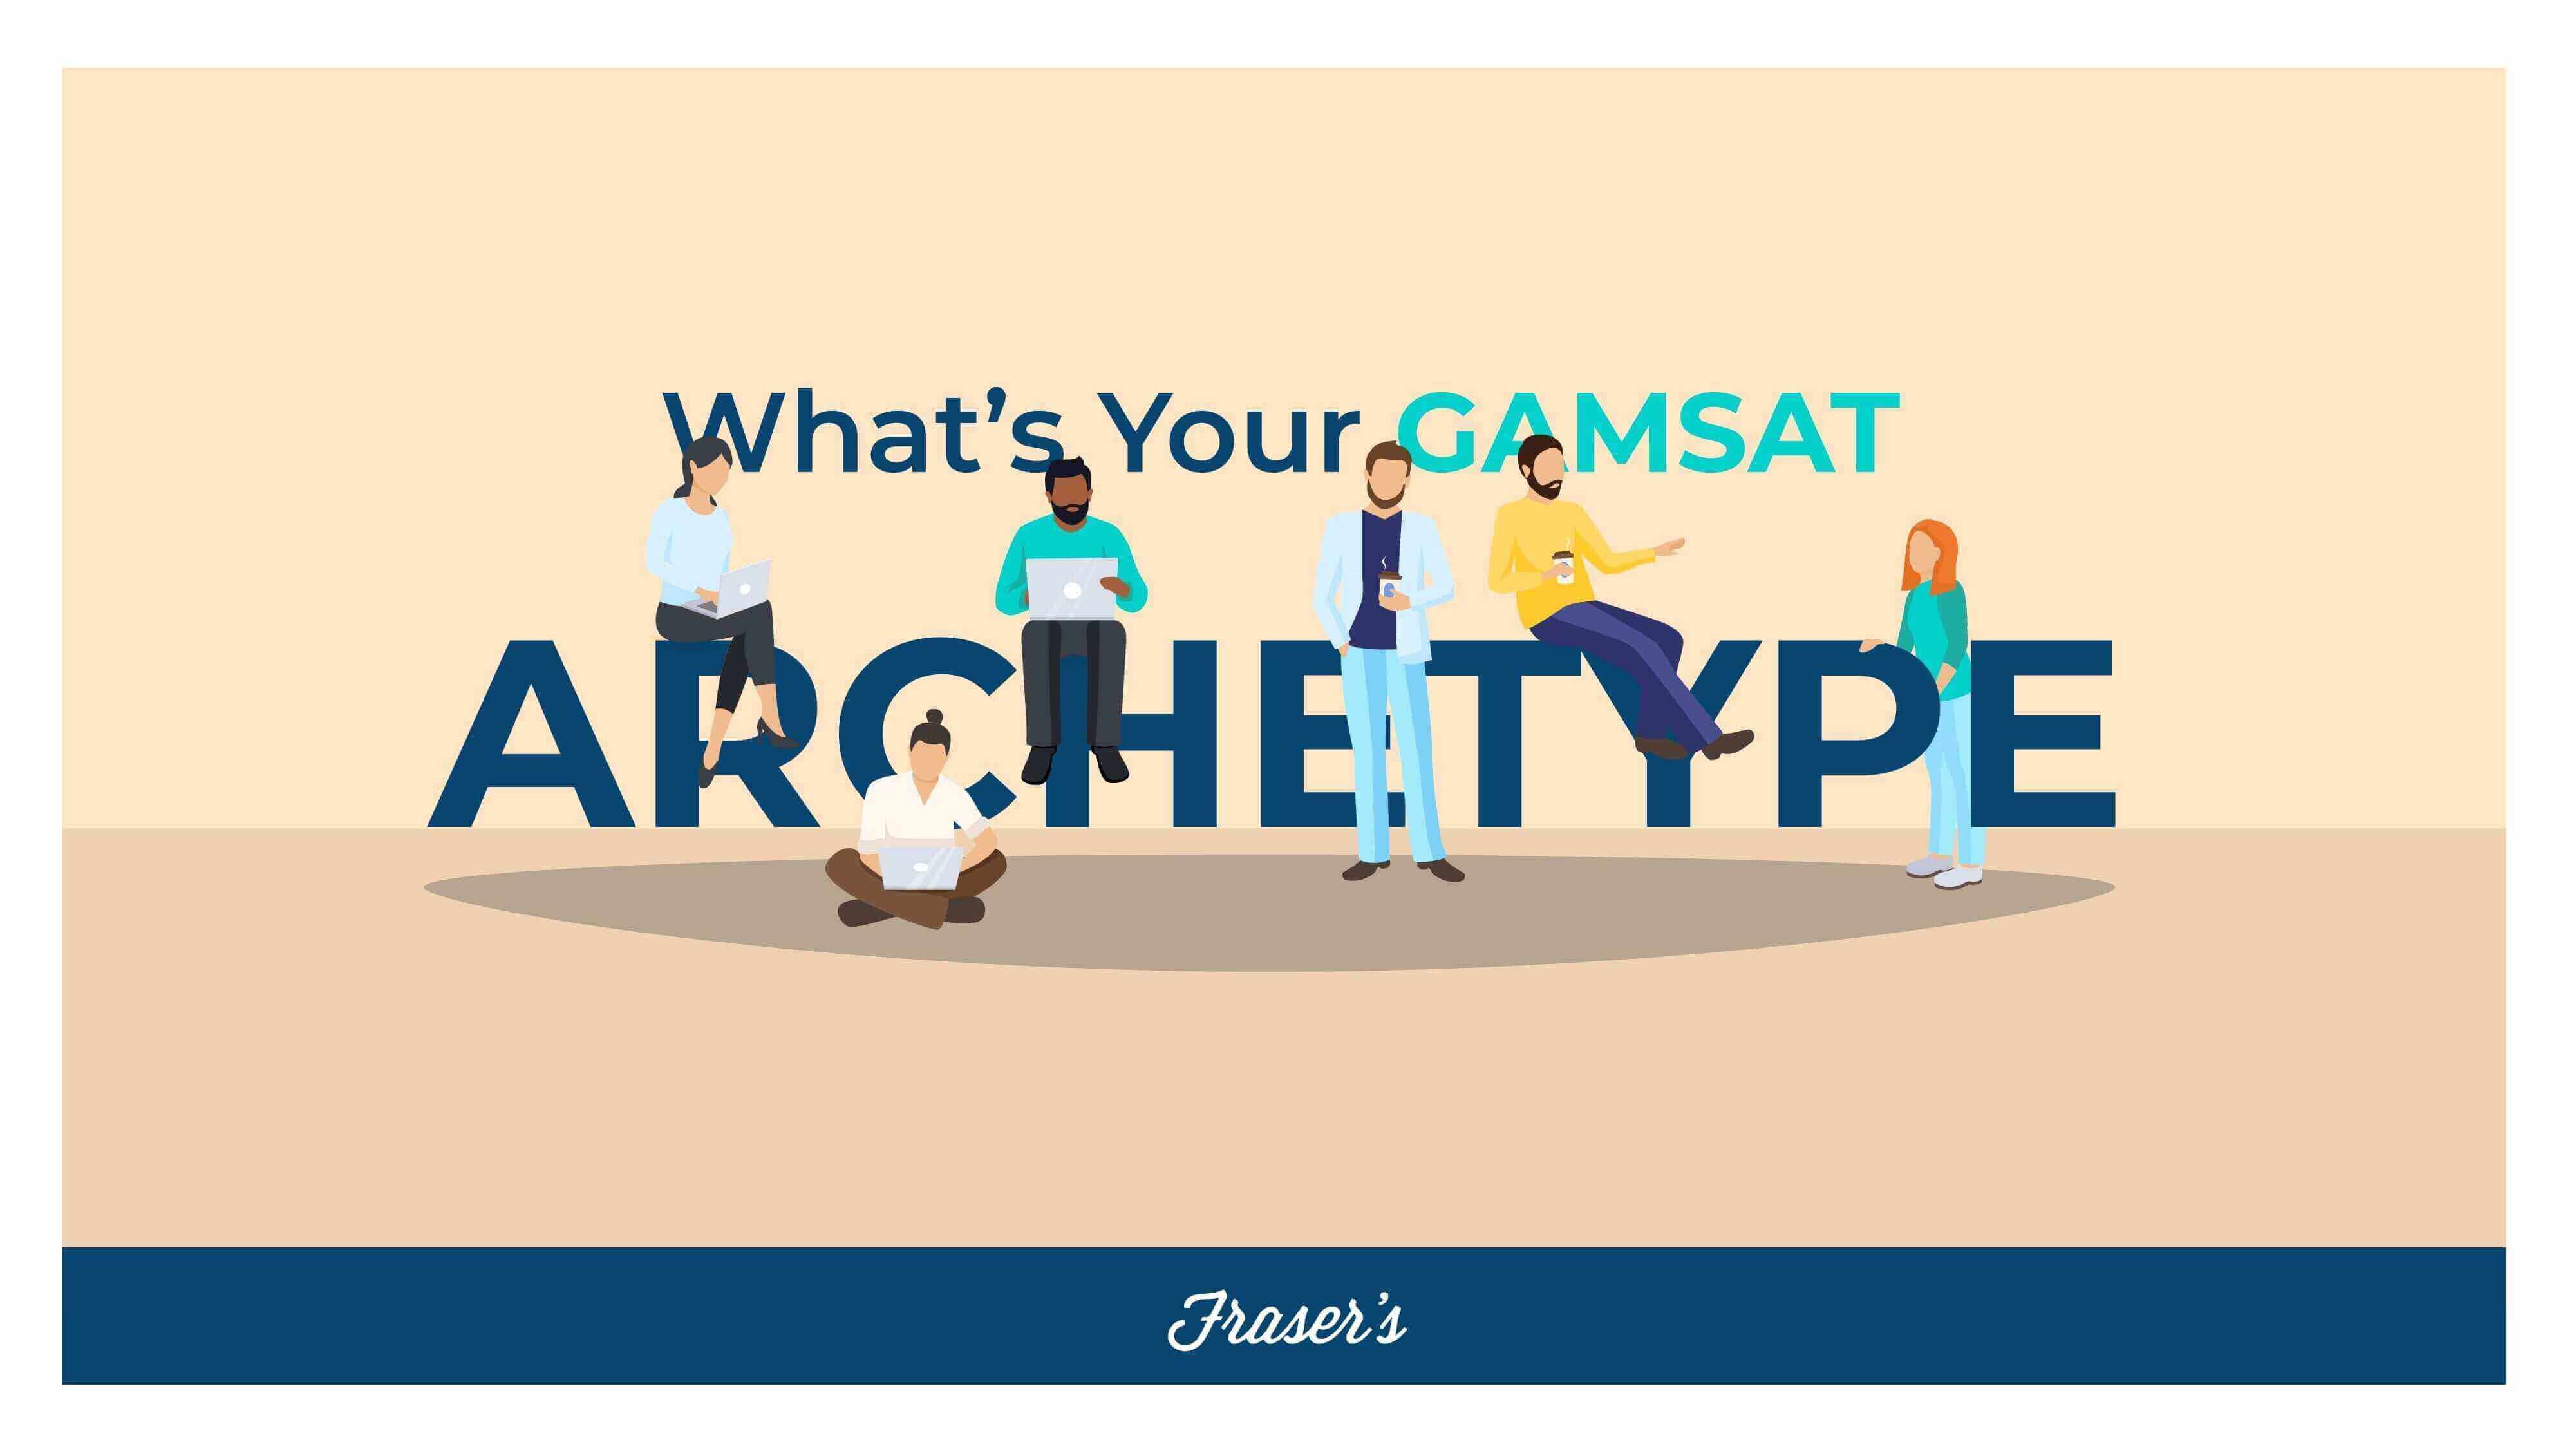 What's your gamsat archetype quiz